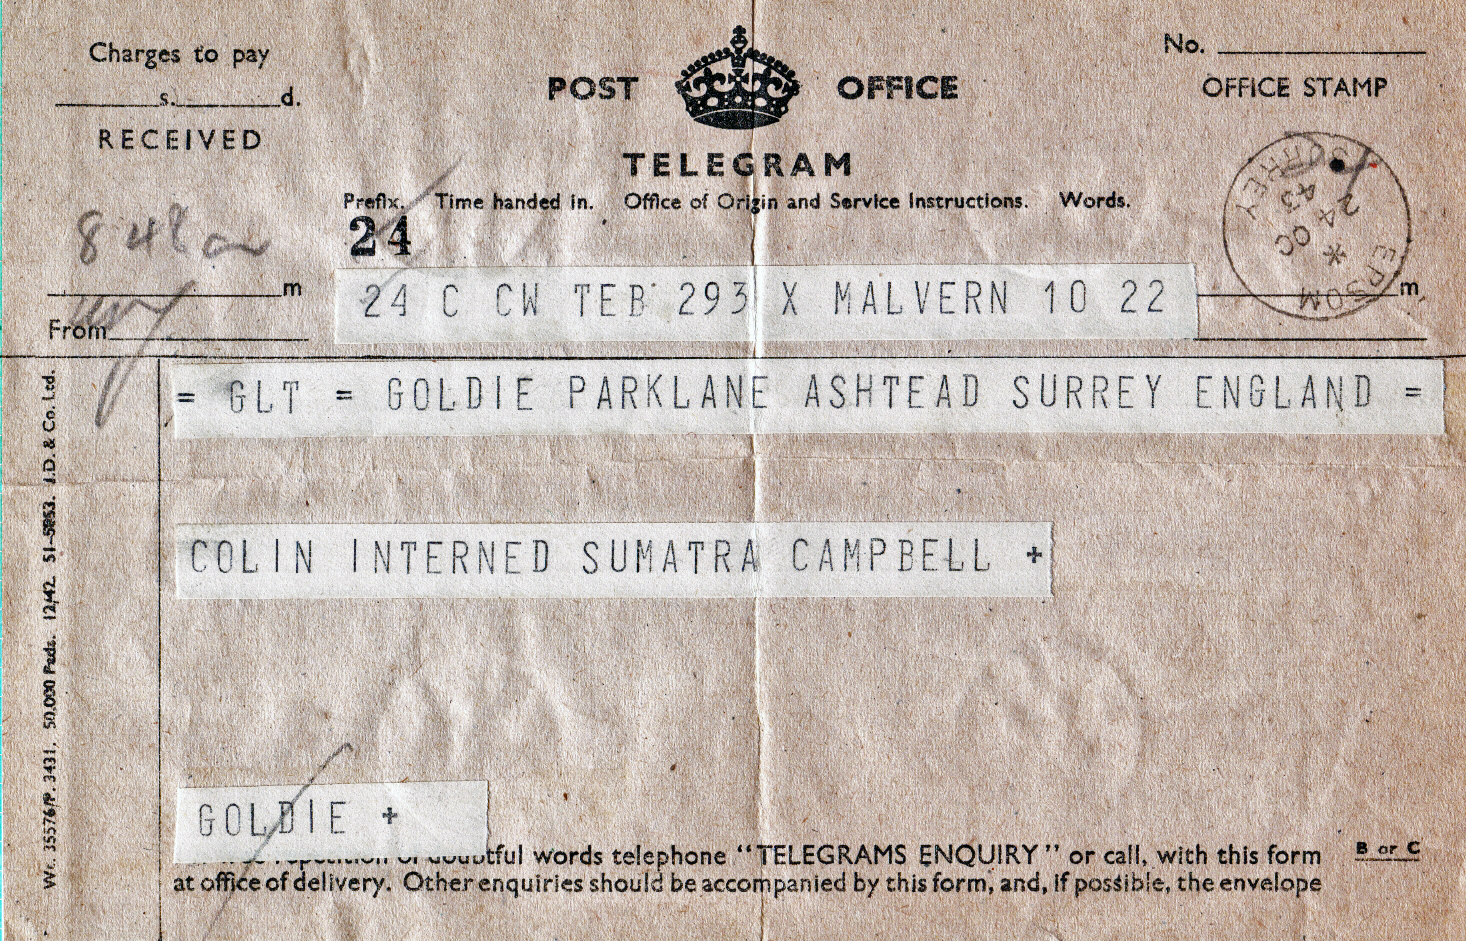 Telegram received 24 October 1943, Colin interned